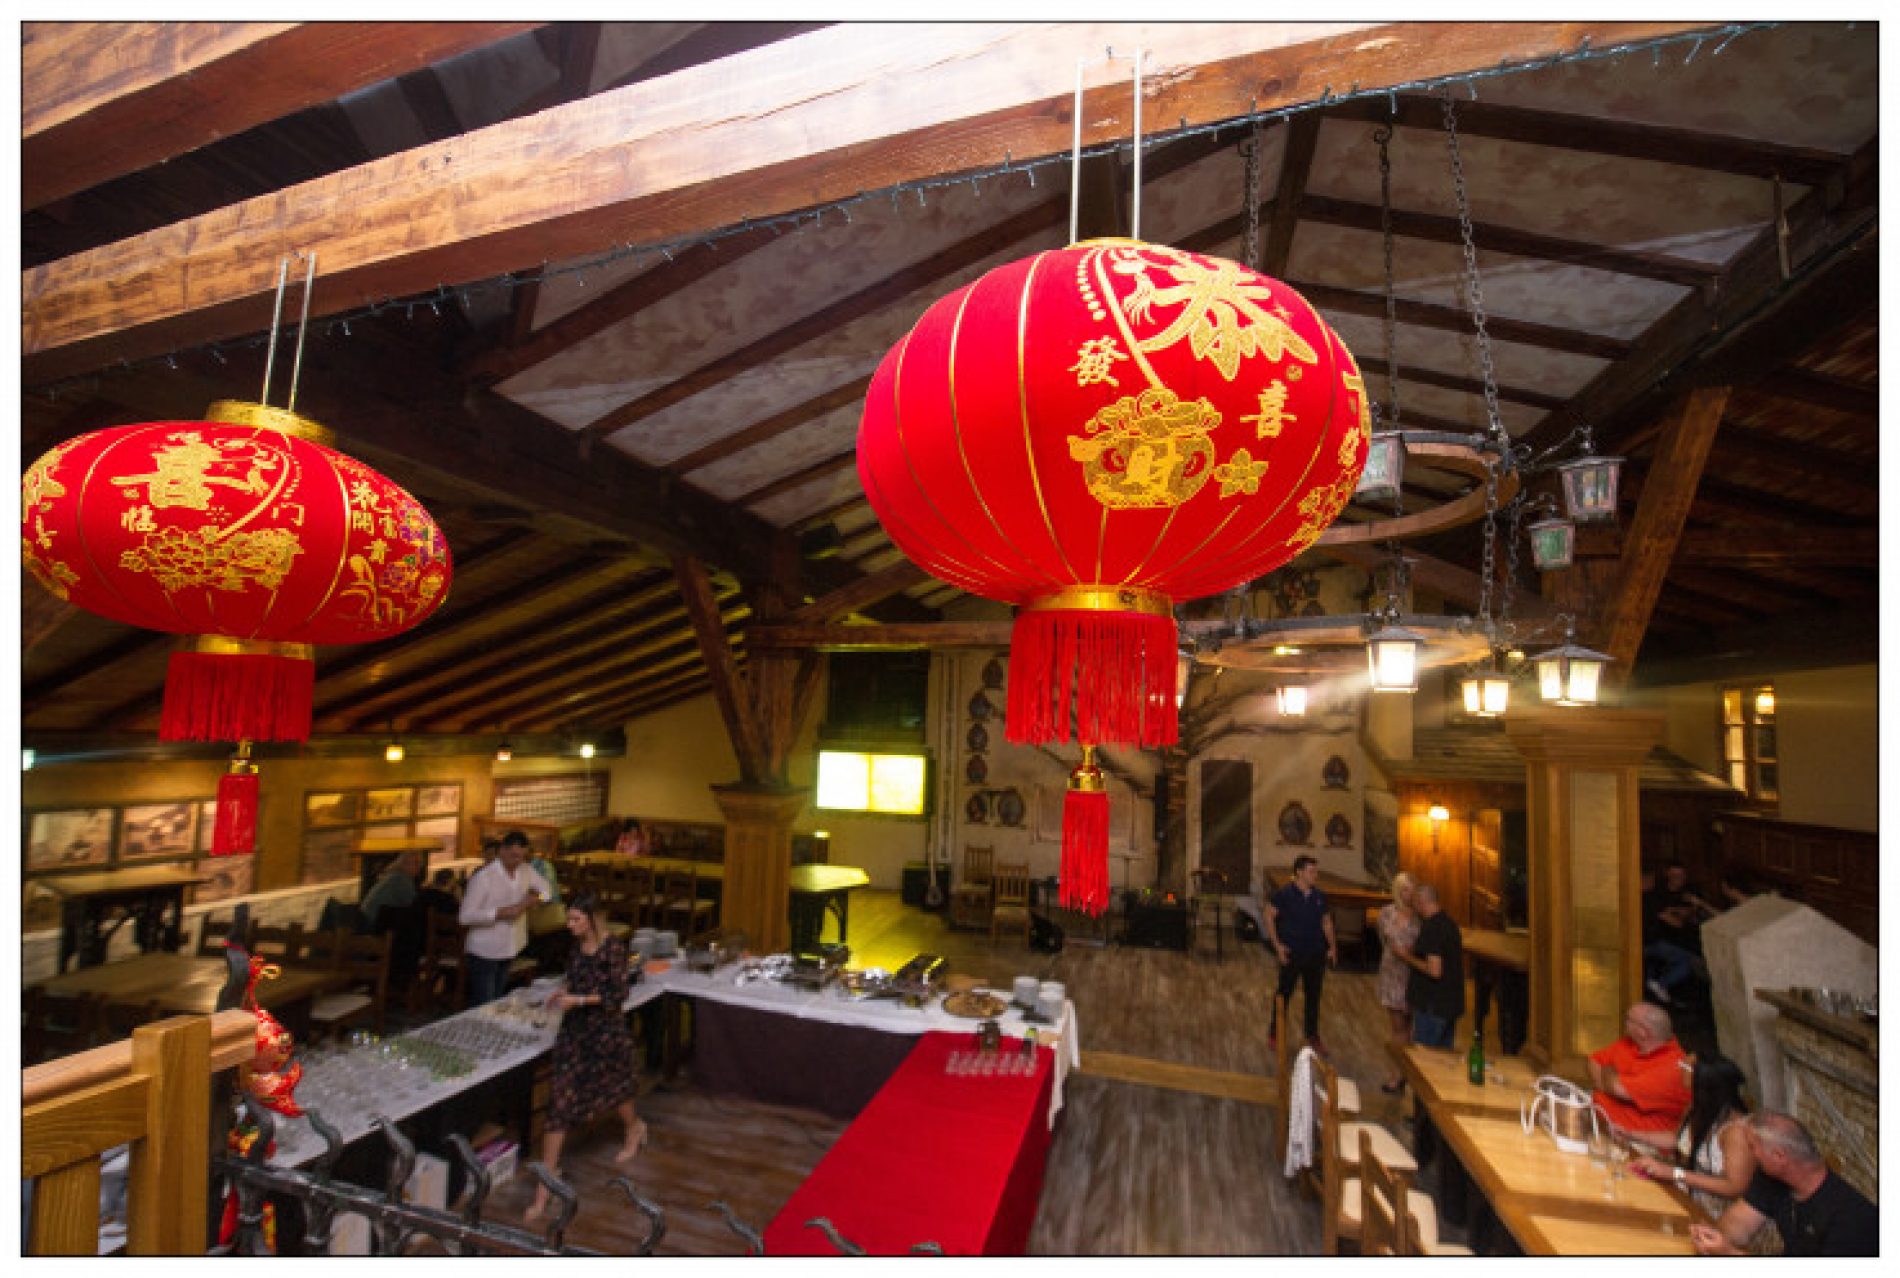 Došao kao turista i pokrenuo biznis: Hu Jude otvorio kineski restoran na Baščaršiji